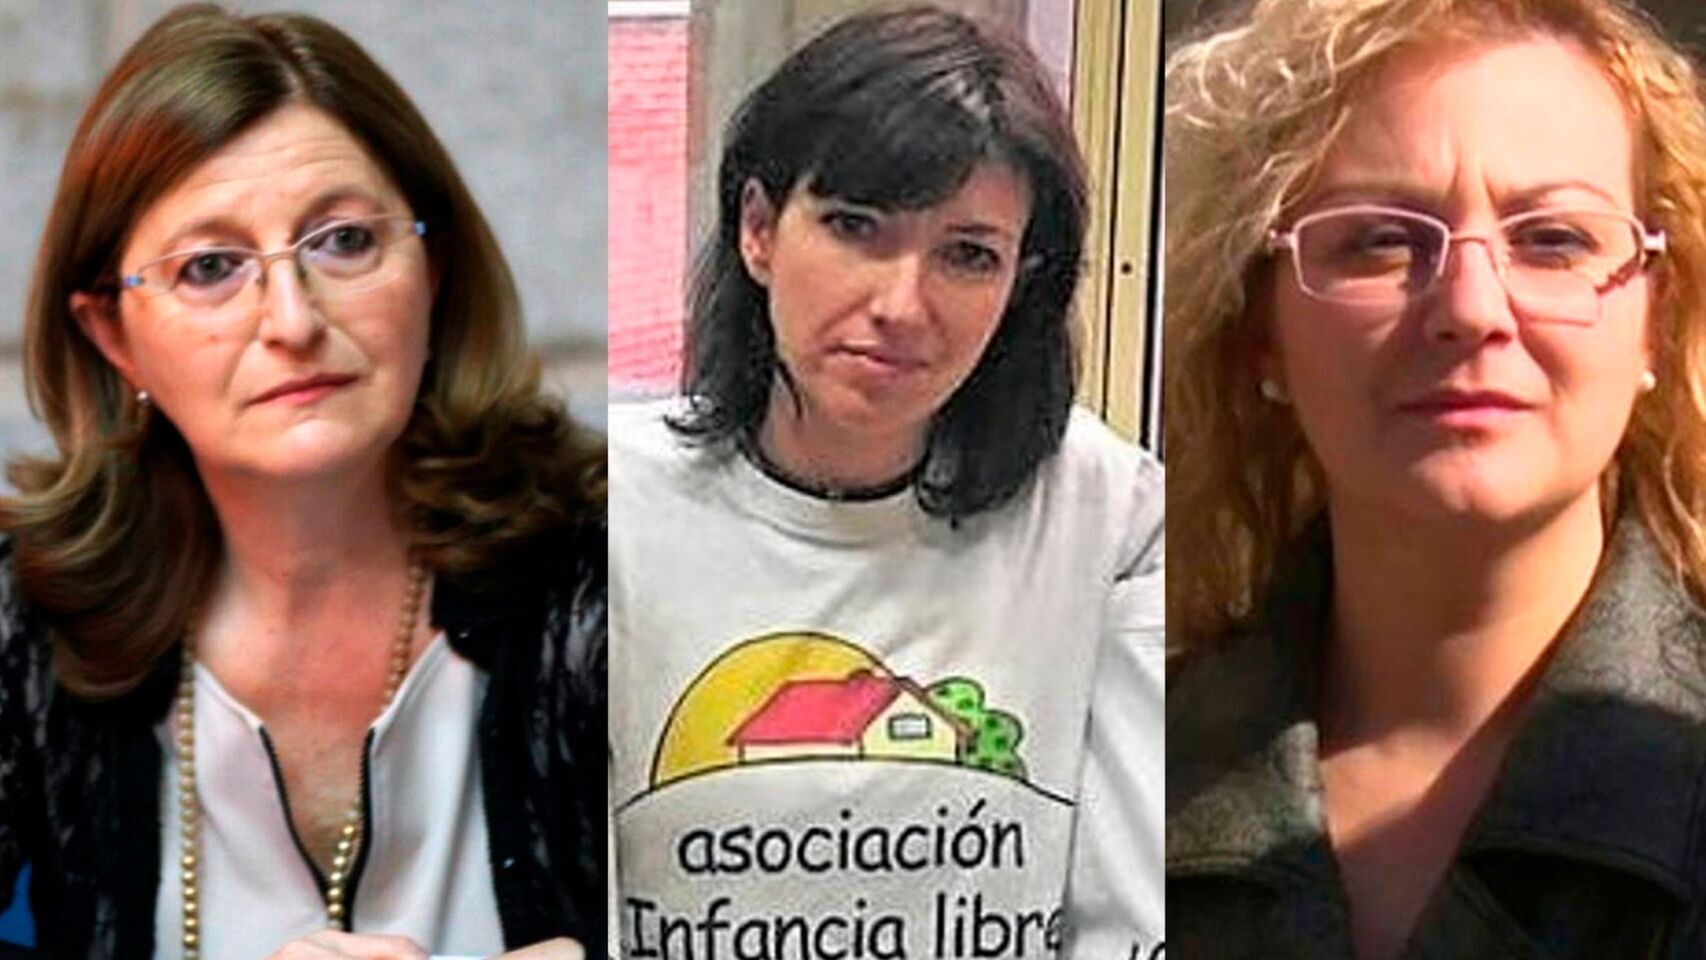 De izquierda a derecha, la pediatra Narcisa Palomino, Patricia González, miembro de Infancia Libre, y María Sevilla, presidenta de dicha asociación.